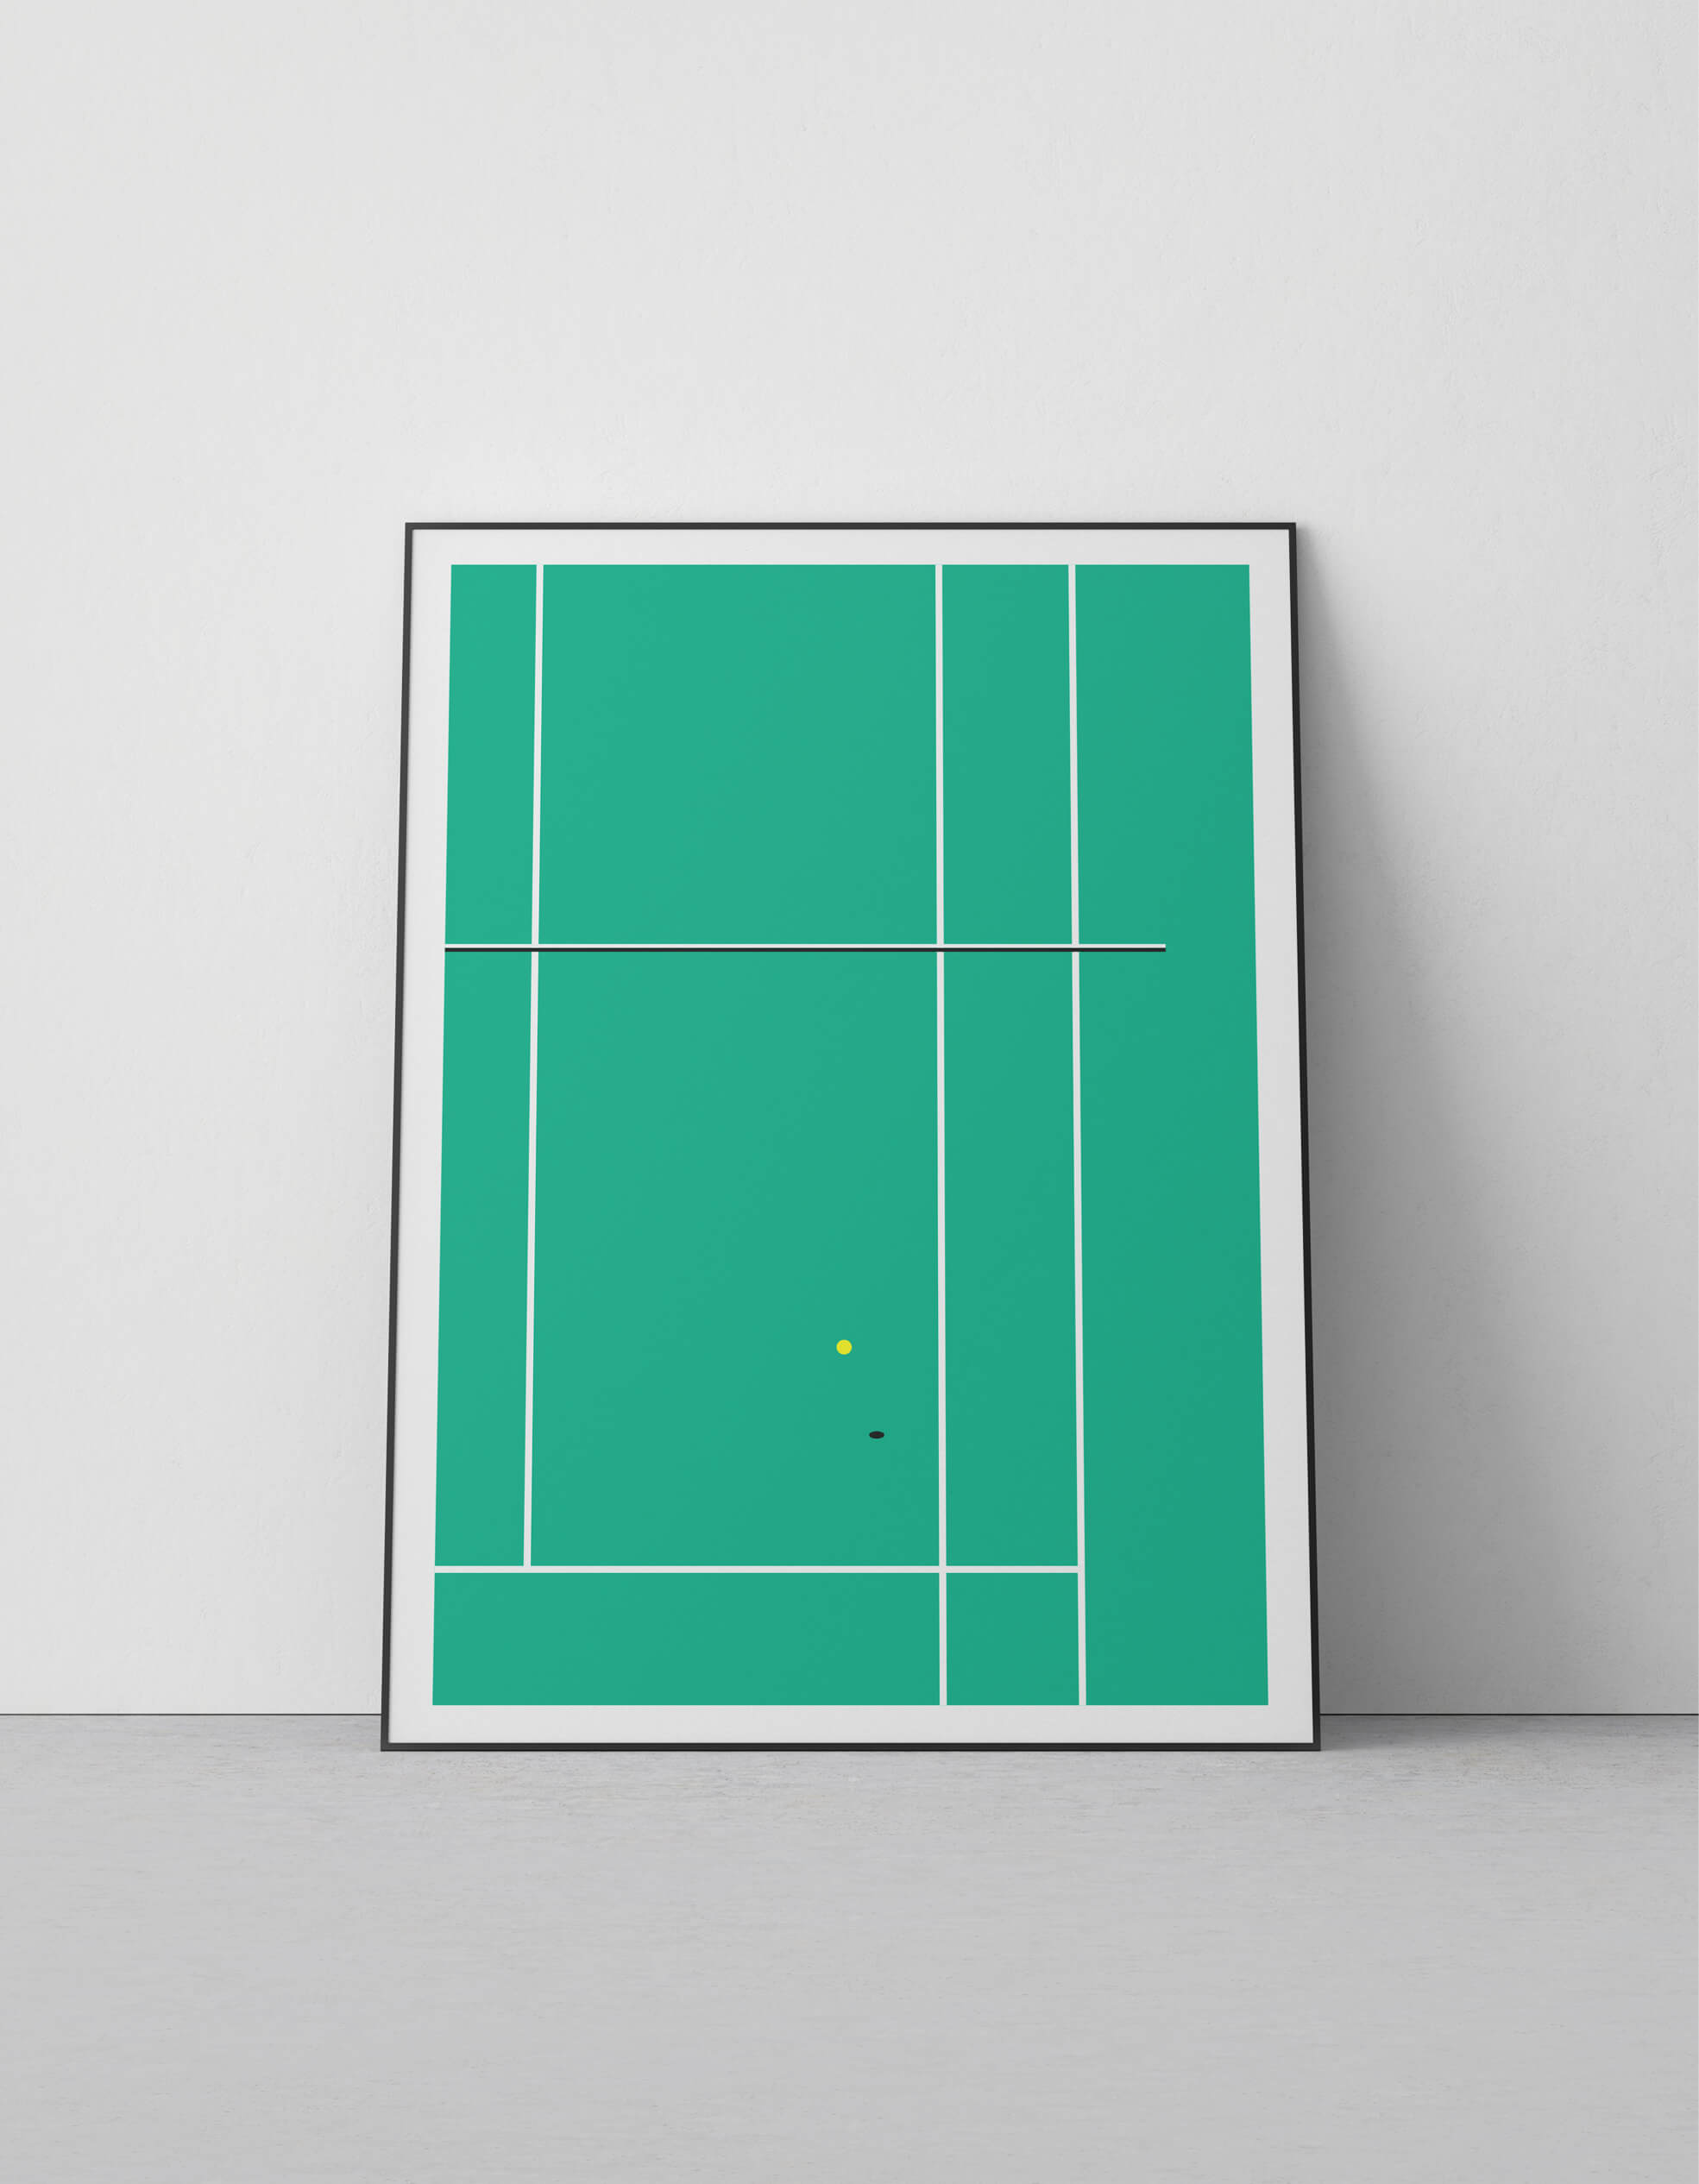 OFFICIAL_tennis_screenprint_1